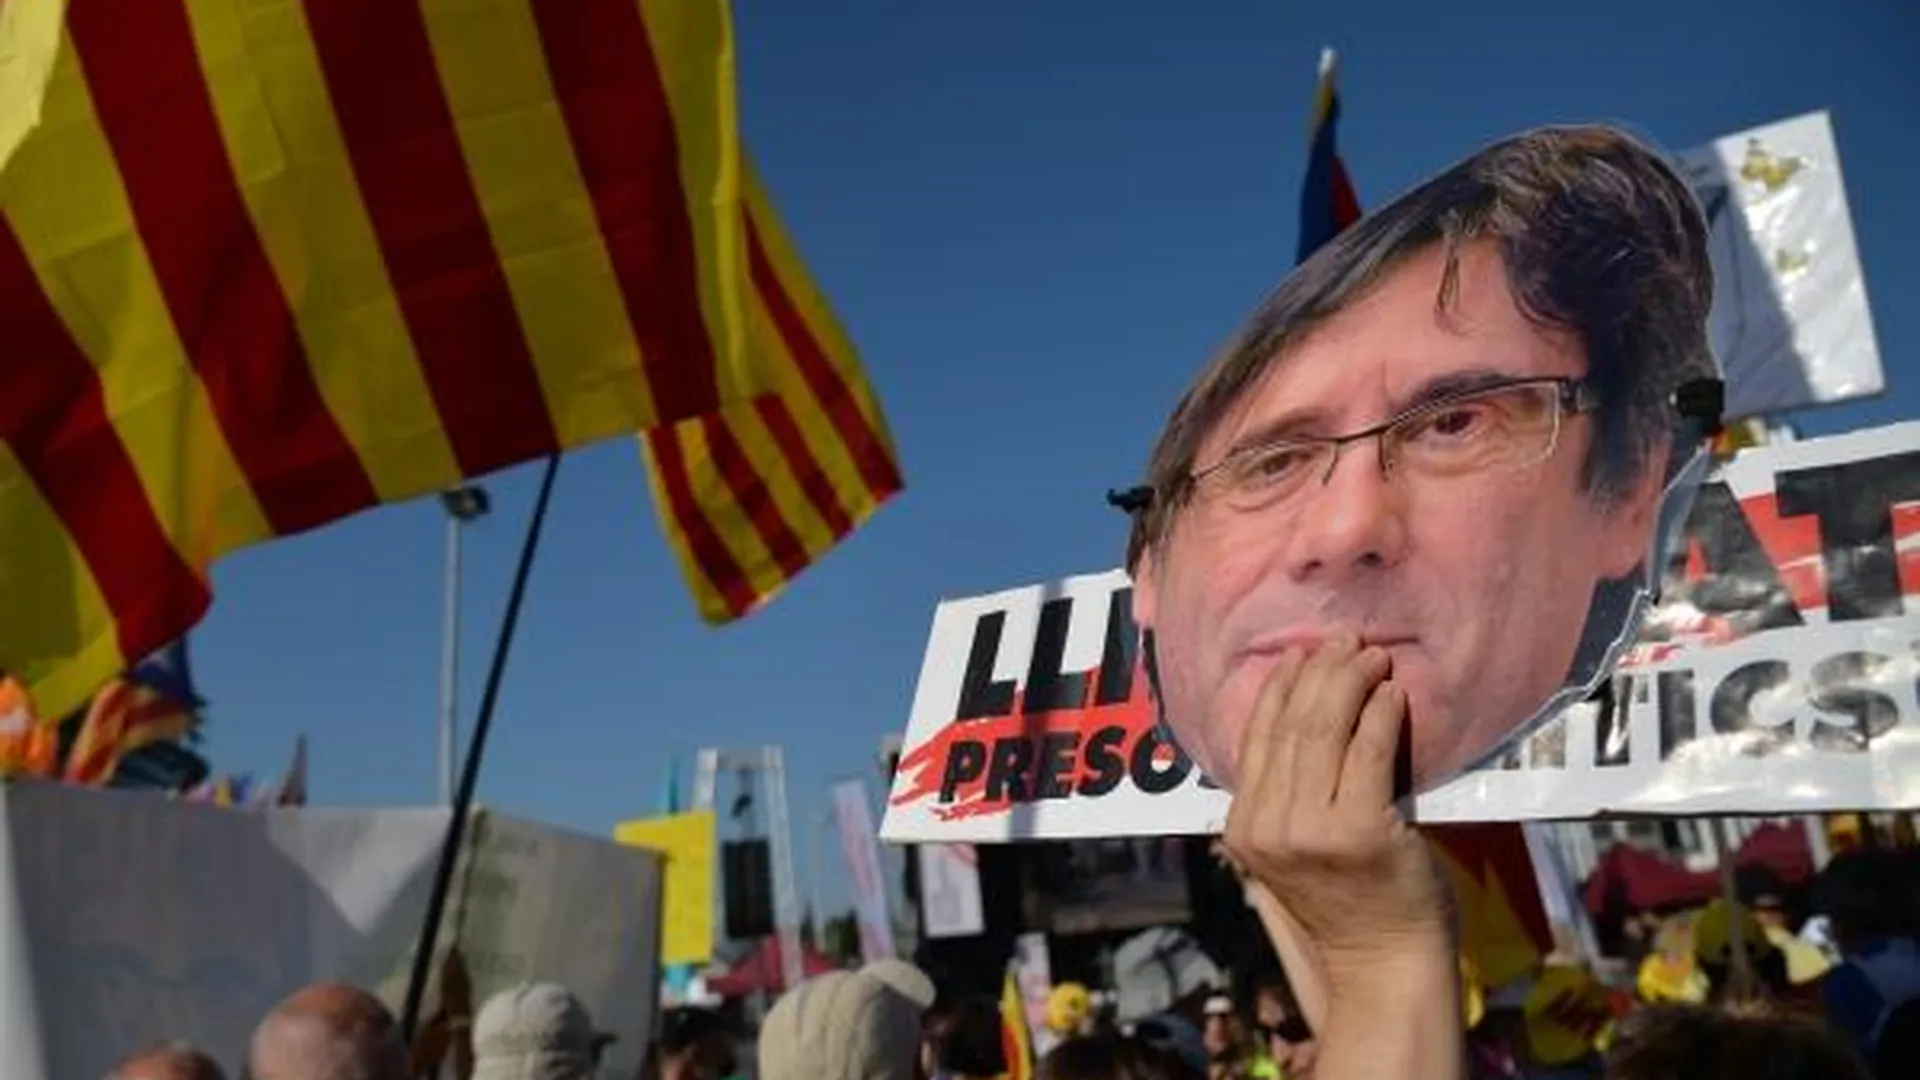 Сторонники независимости Каталонии проводят митинг в поддержку бывшего председателя правительства Каталонии Карлеса Пучдемона